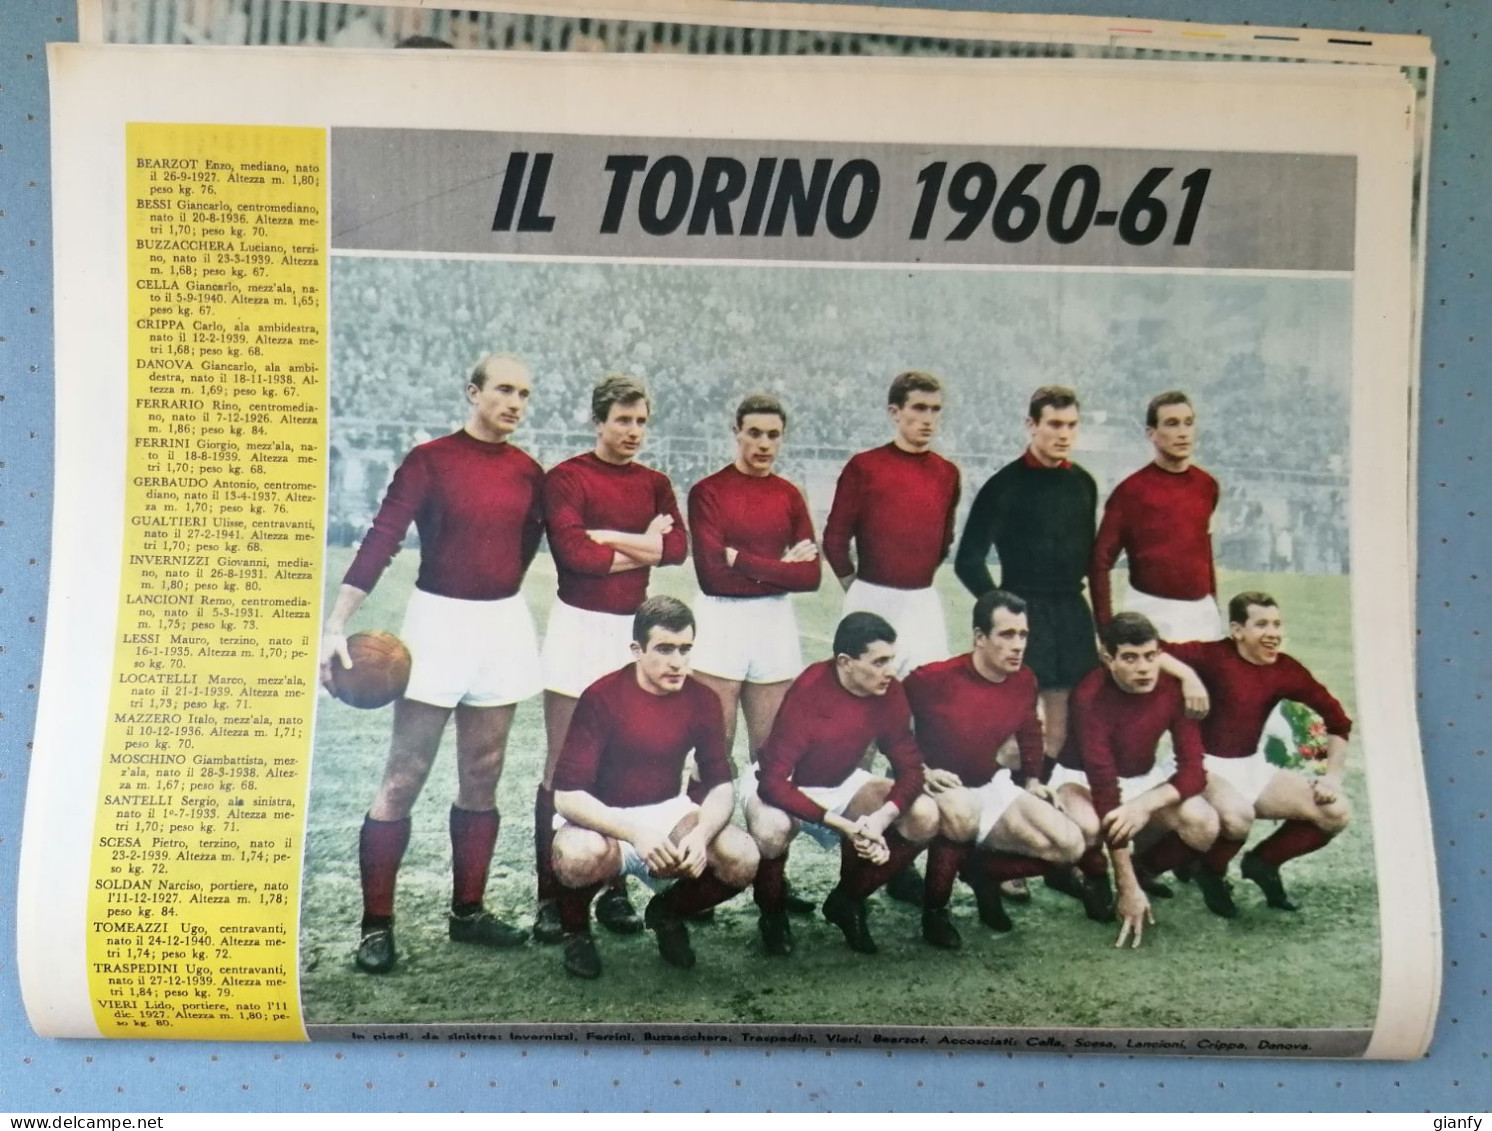 SPORT ILLUSTRATO 1961 CALCIO TORINO ATLETICA BERRUTI CICLISMO SEI GIORNI - Sports